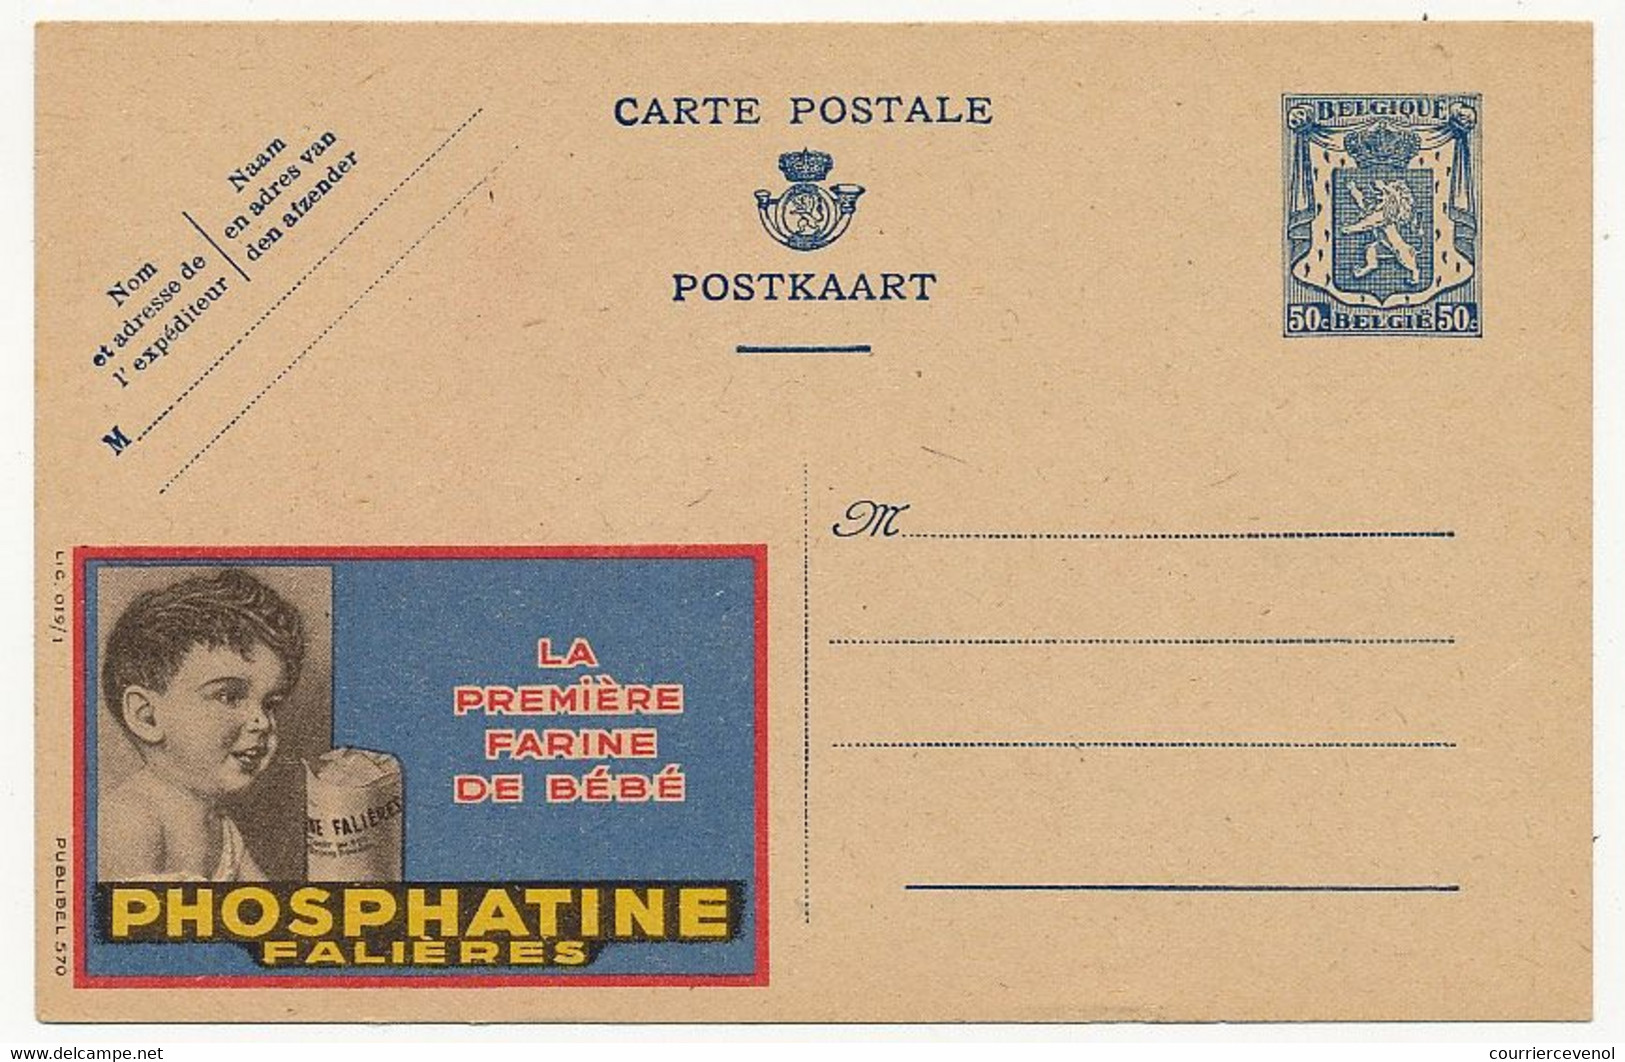 BELGIQUE => Carte Postale - 50c Avec Publicité "Phosphatine Falières" - Publibel N° 570 - Publibels